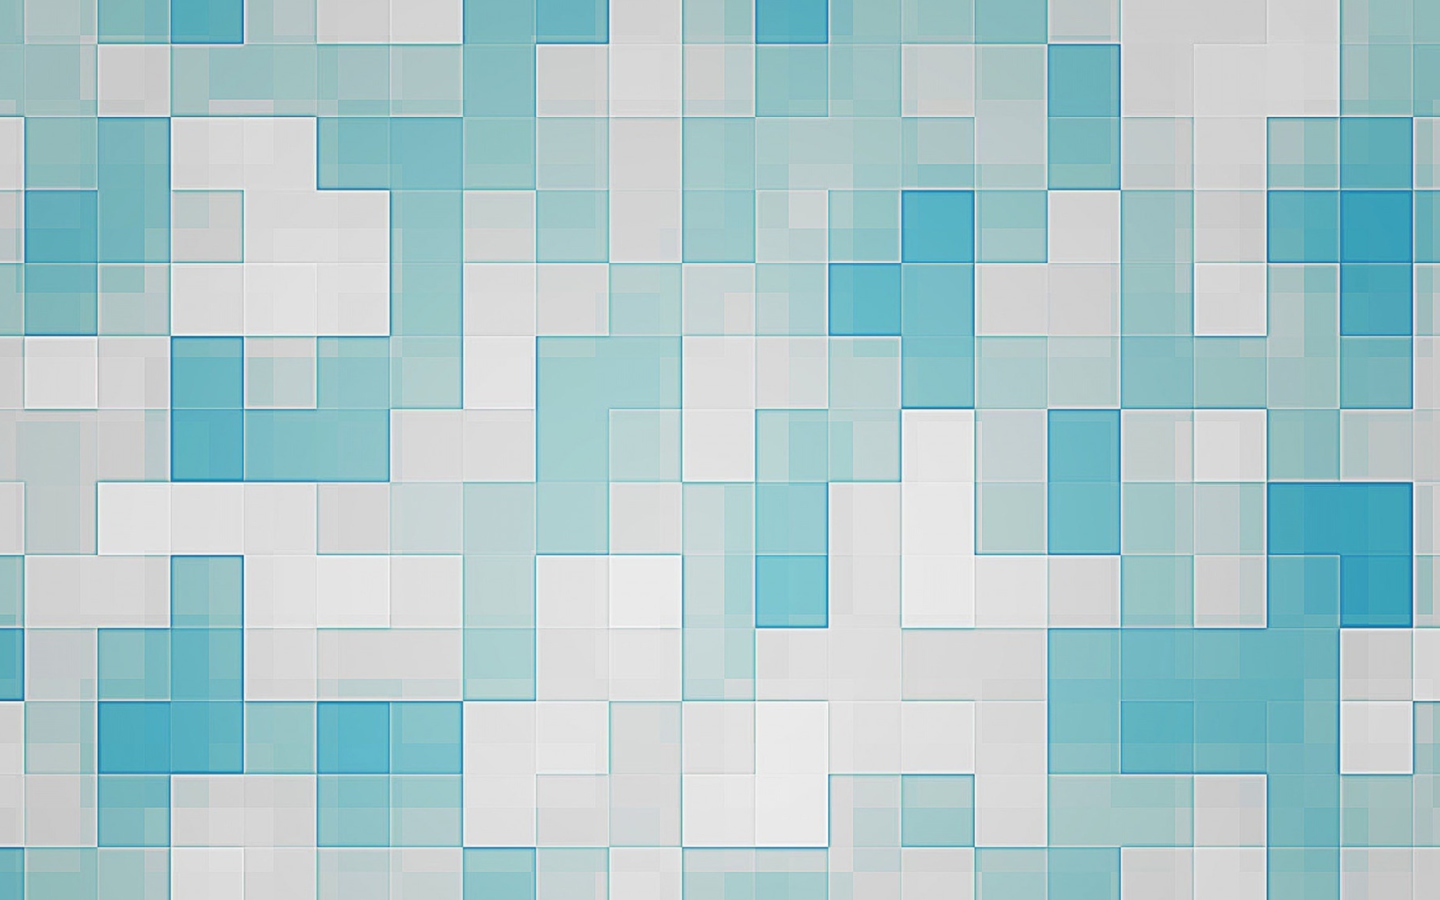 Das Mosaic Wallpaper 1440x900